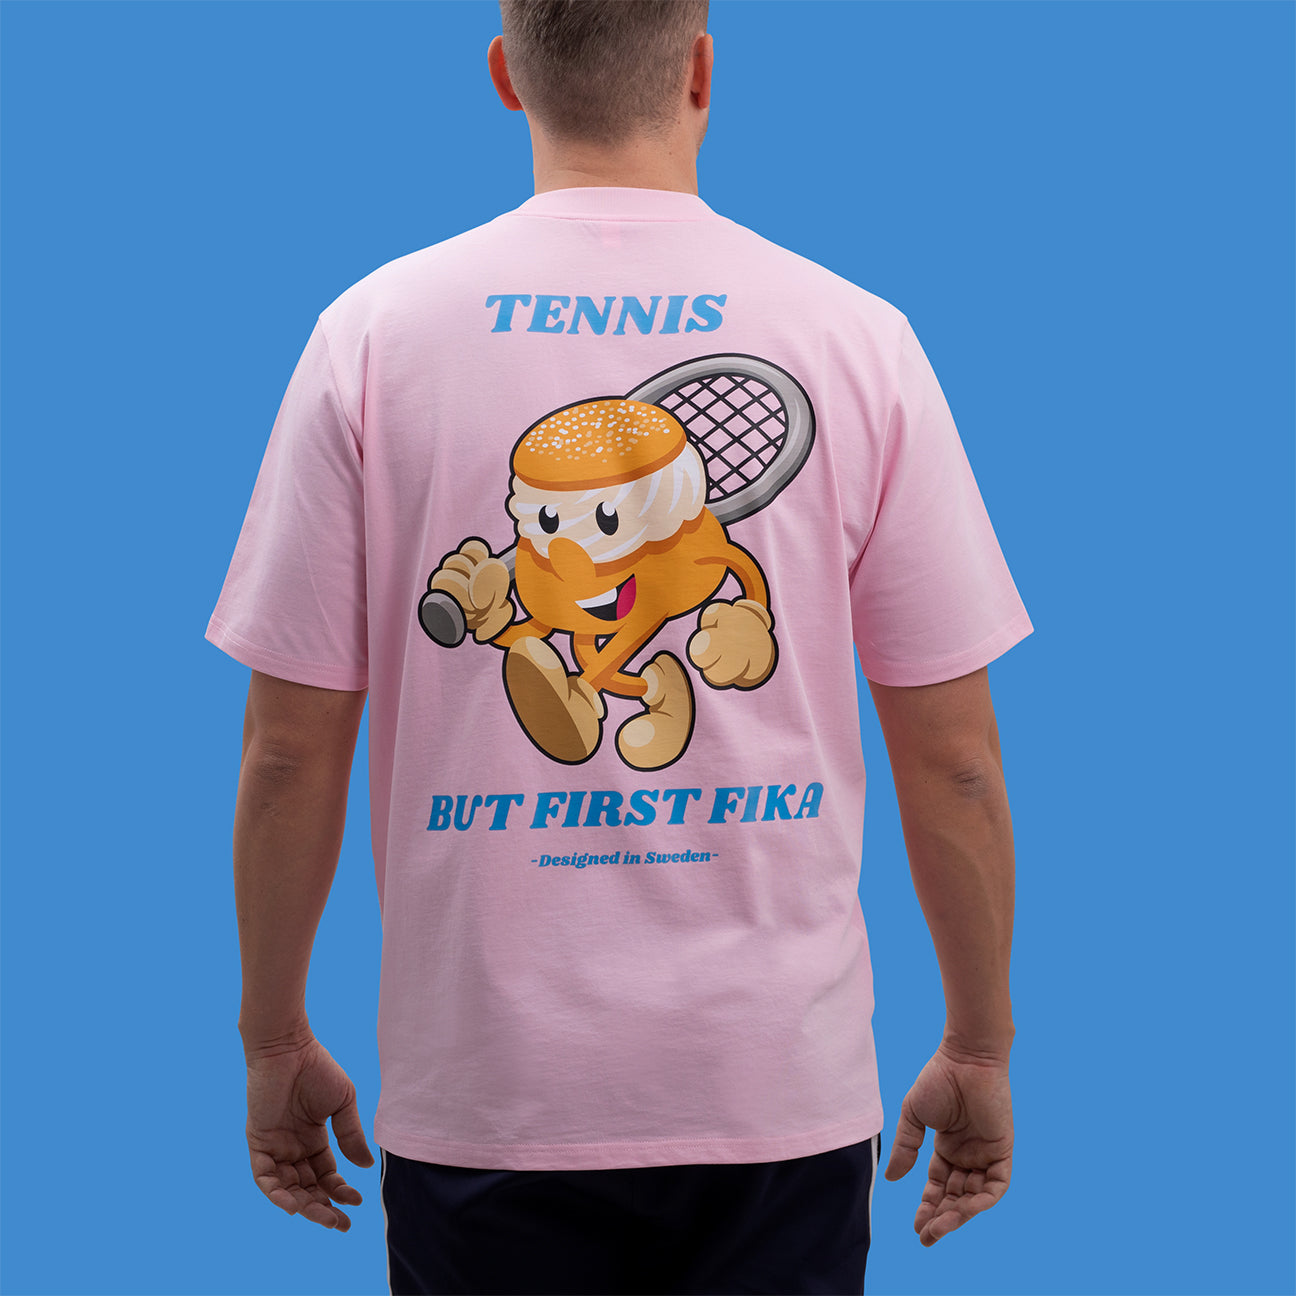 Tennis Semla T-shirt